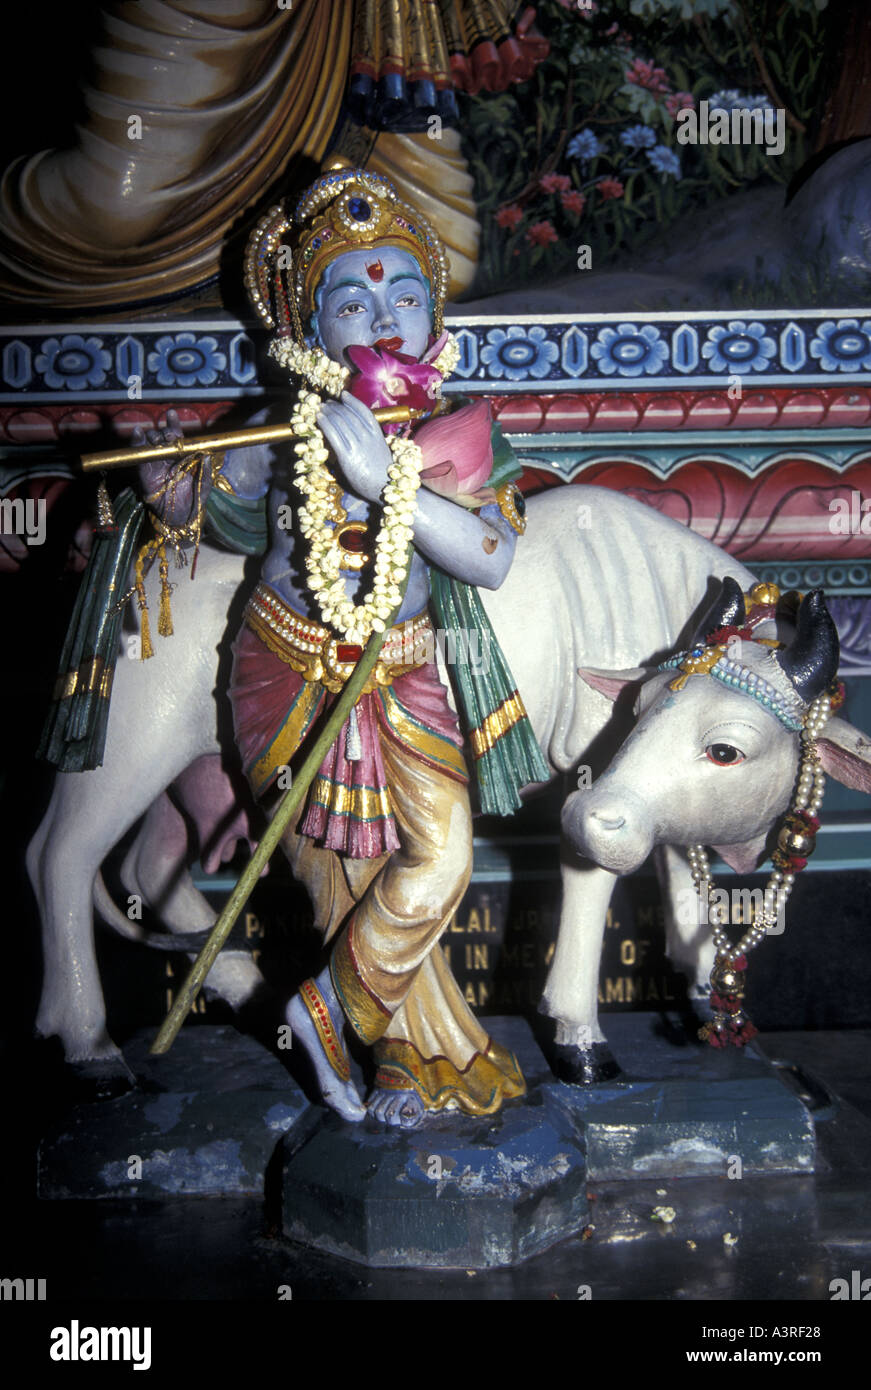 Seigneur Krishna jouant une flûte avec une vache sacrée à côté de lui. Une divinité majeure de l’hindouisme. Il est adoré comme le huitième avatar de Vishnu. Banque D'Images